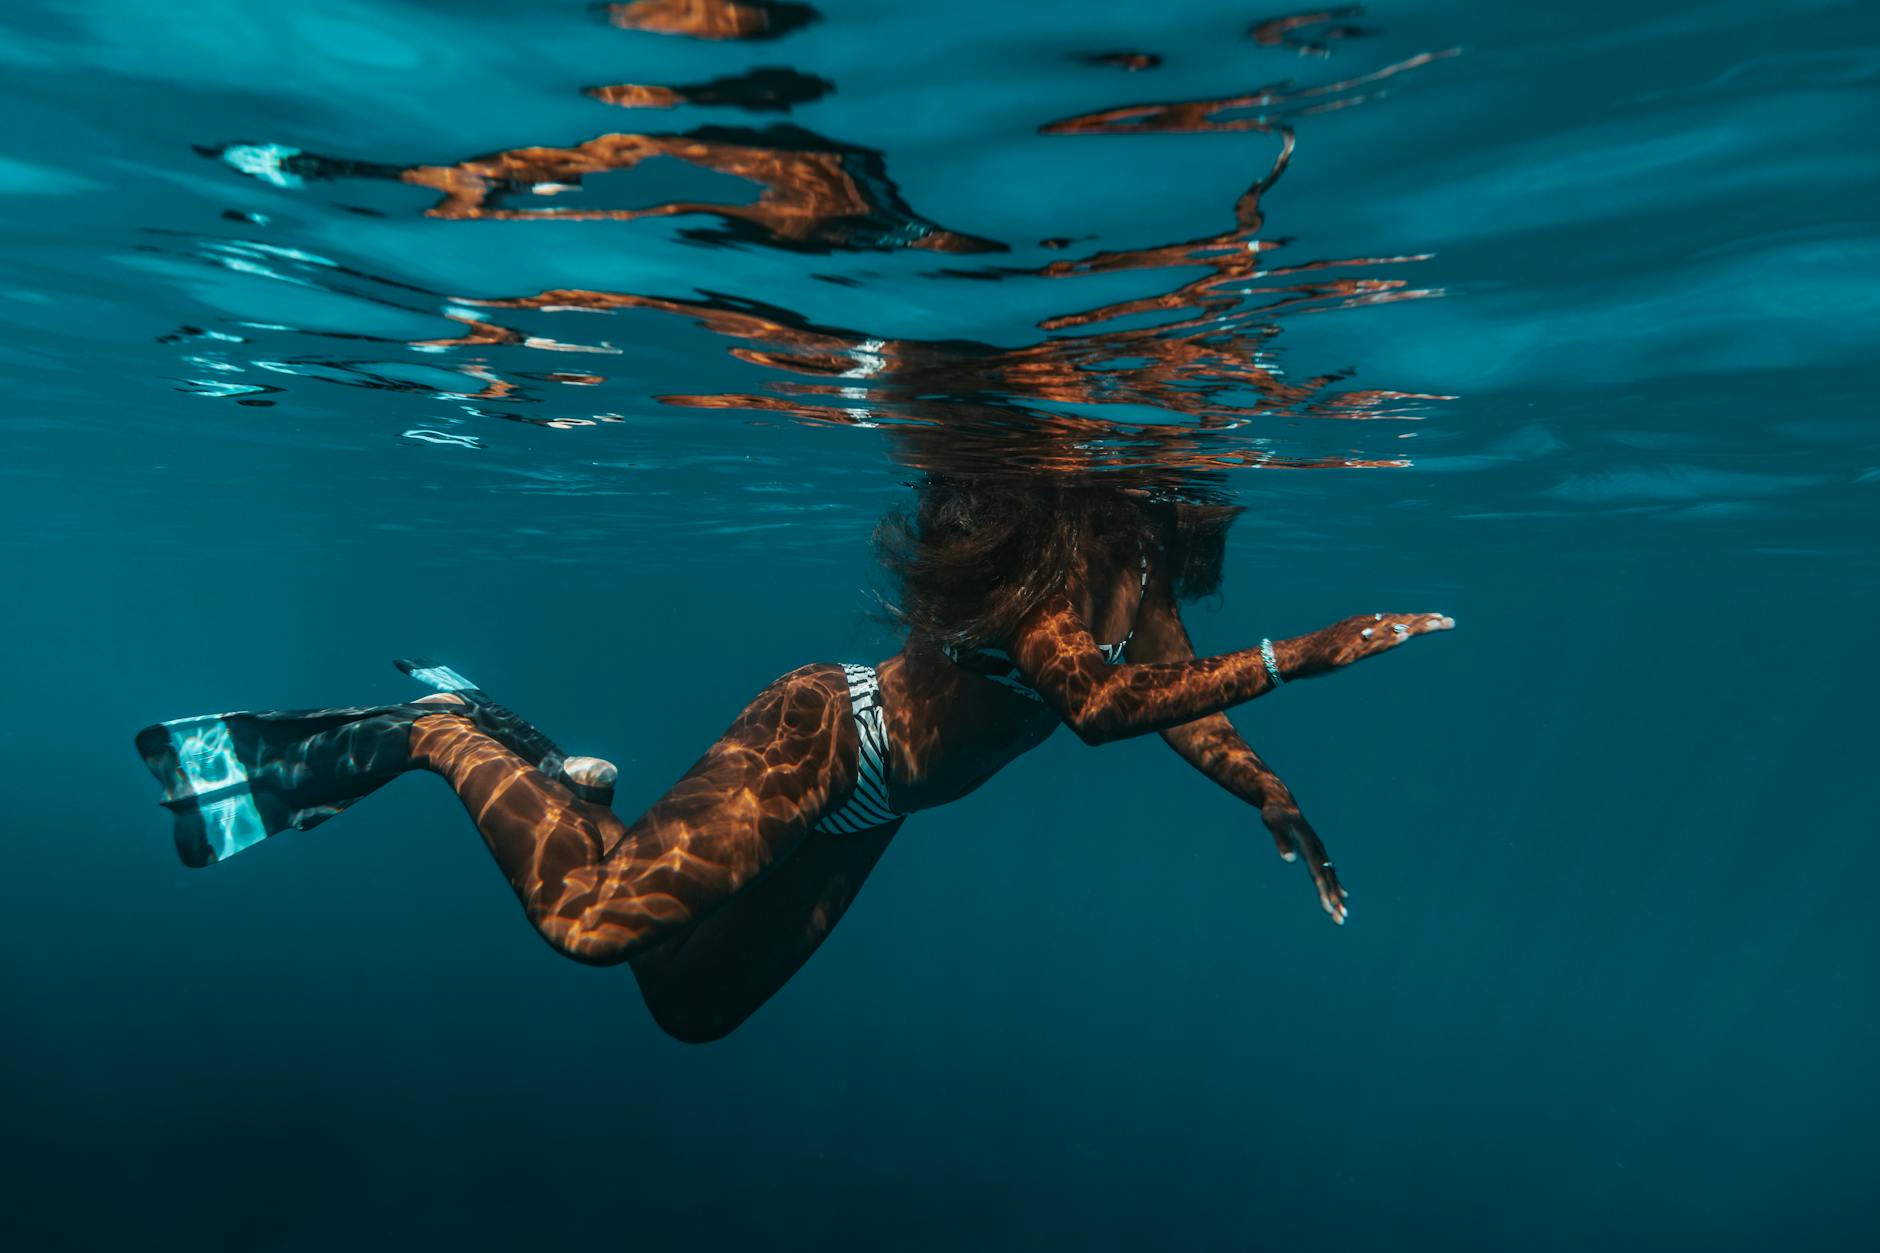 Woman in Striped Bikini and Flippers Swimming in Water